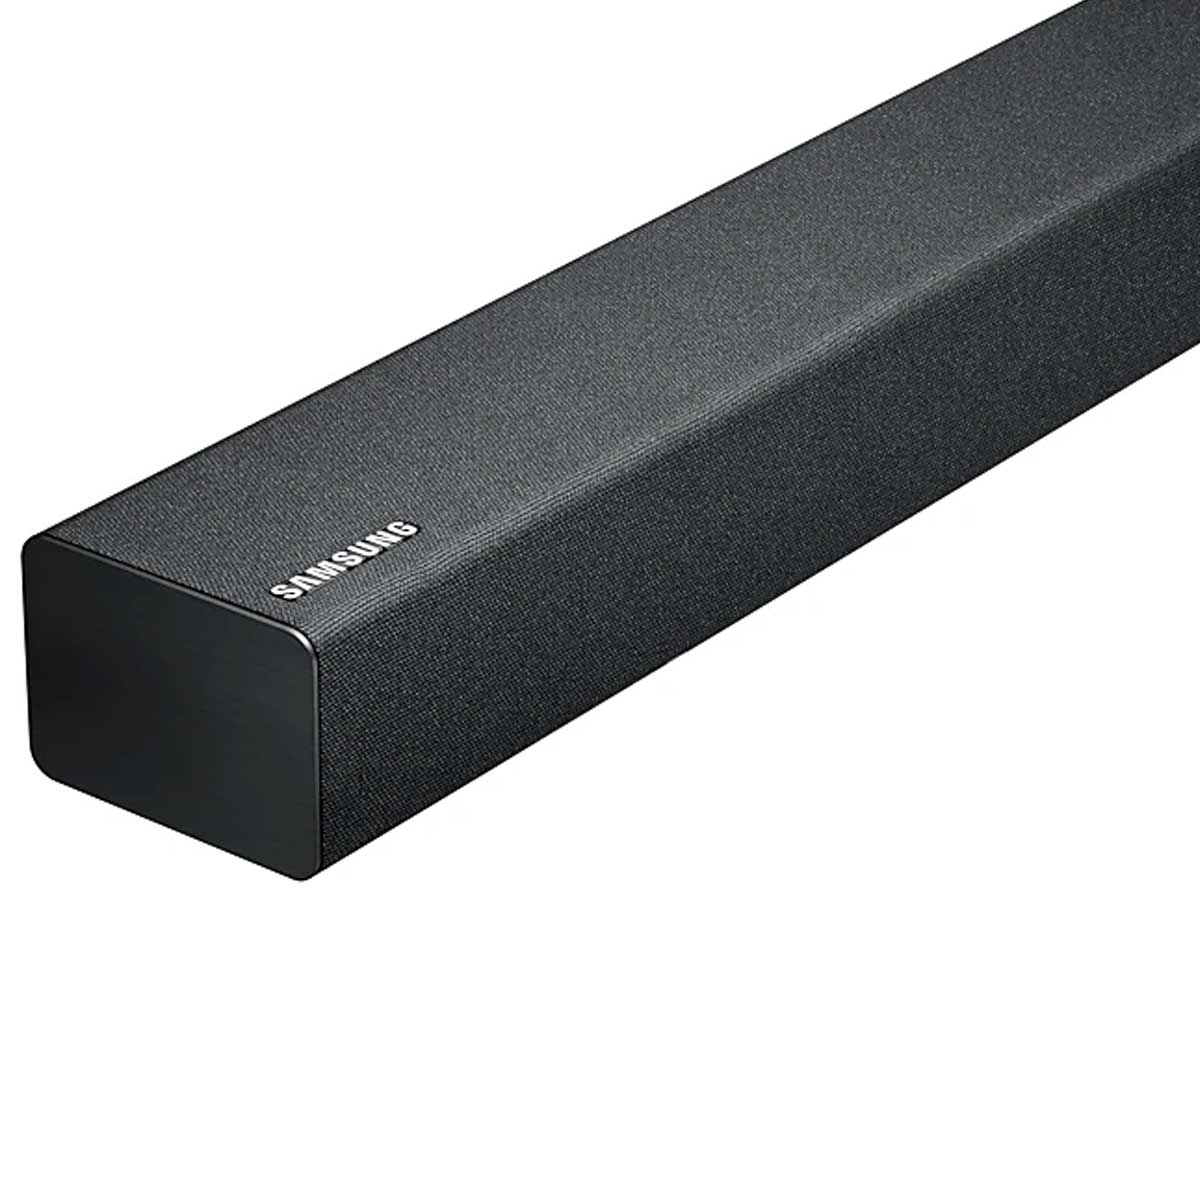 Loa Soundbar Samsung HW-R450/XV 2.1 CH